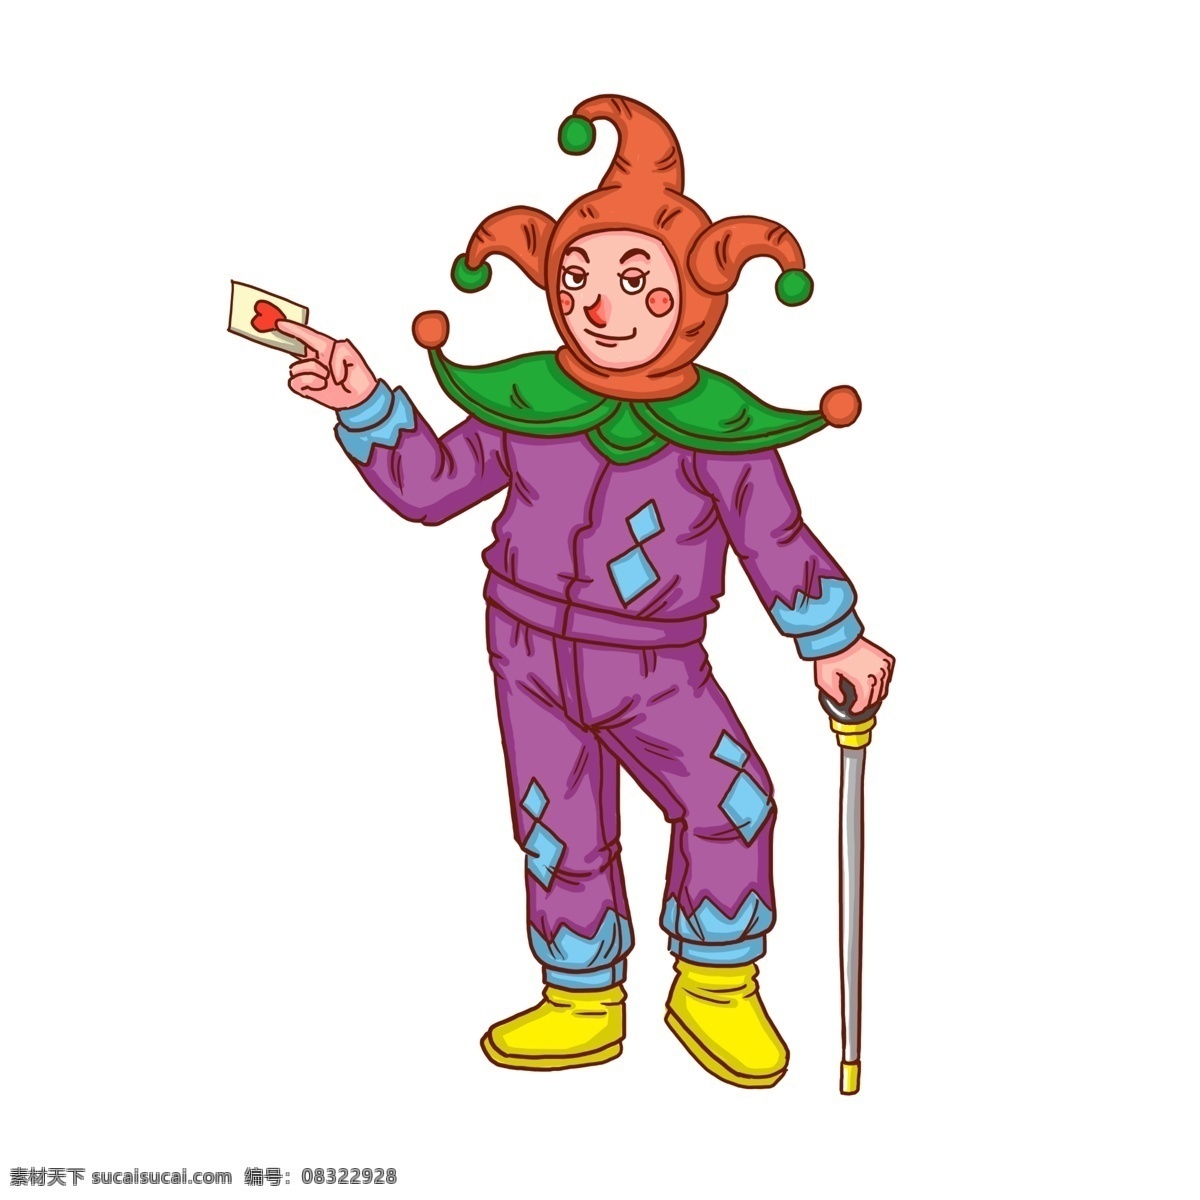 小丑 愚人节 扑克 卡通 人物 愚人节道具 男小丑 卡通人物 快乐小丑 黄色 红色 绿色 紫色 愚人节快乐